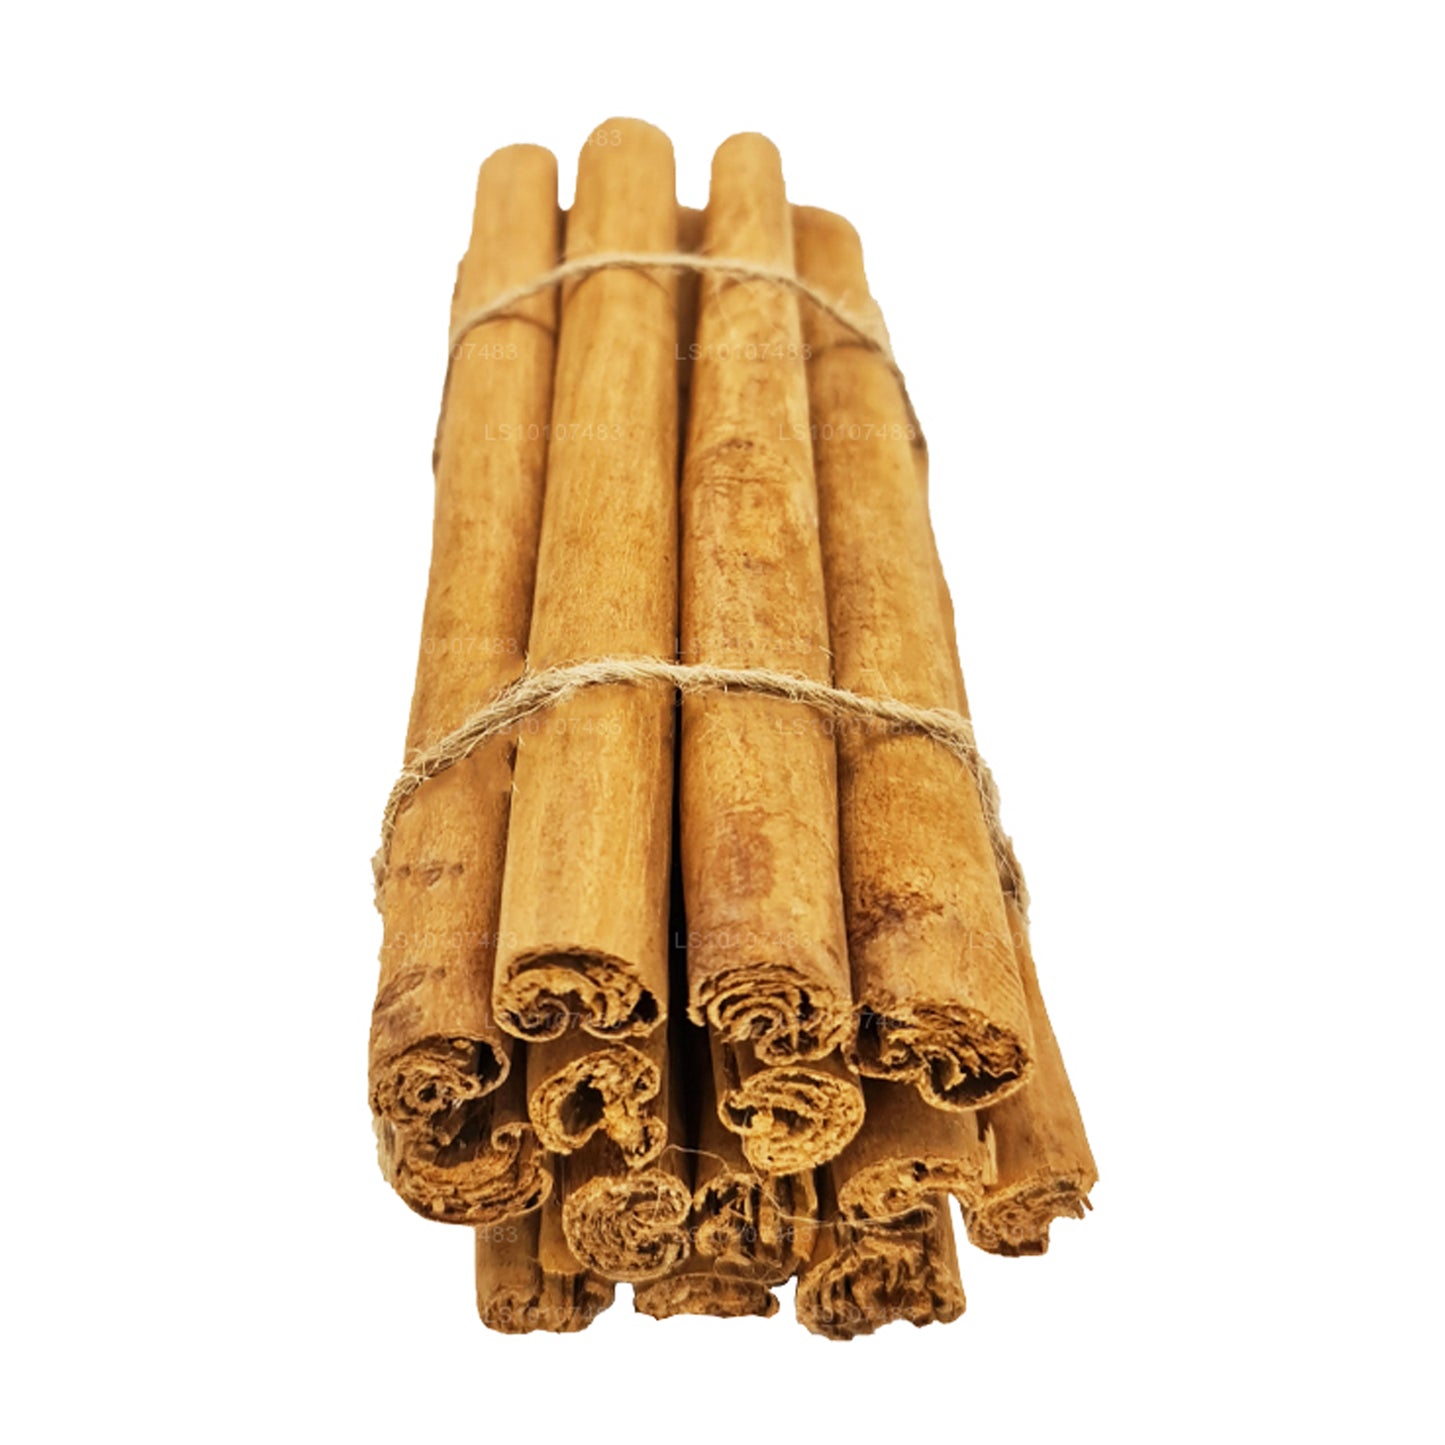 Lakpura ”C4" Grade Ceylon Sann Kanel Barks Pack